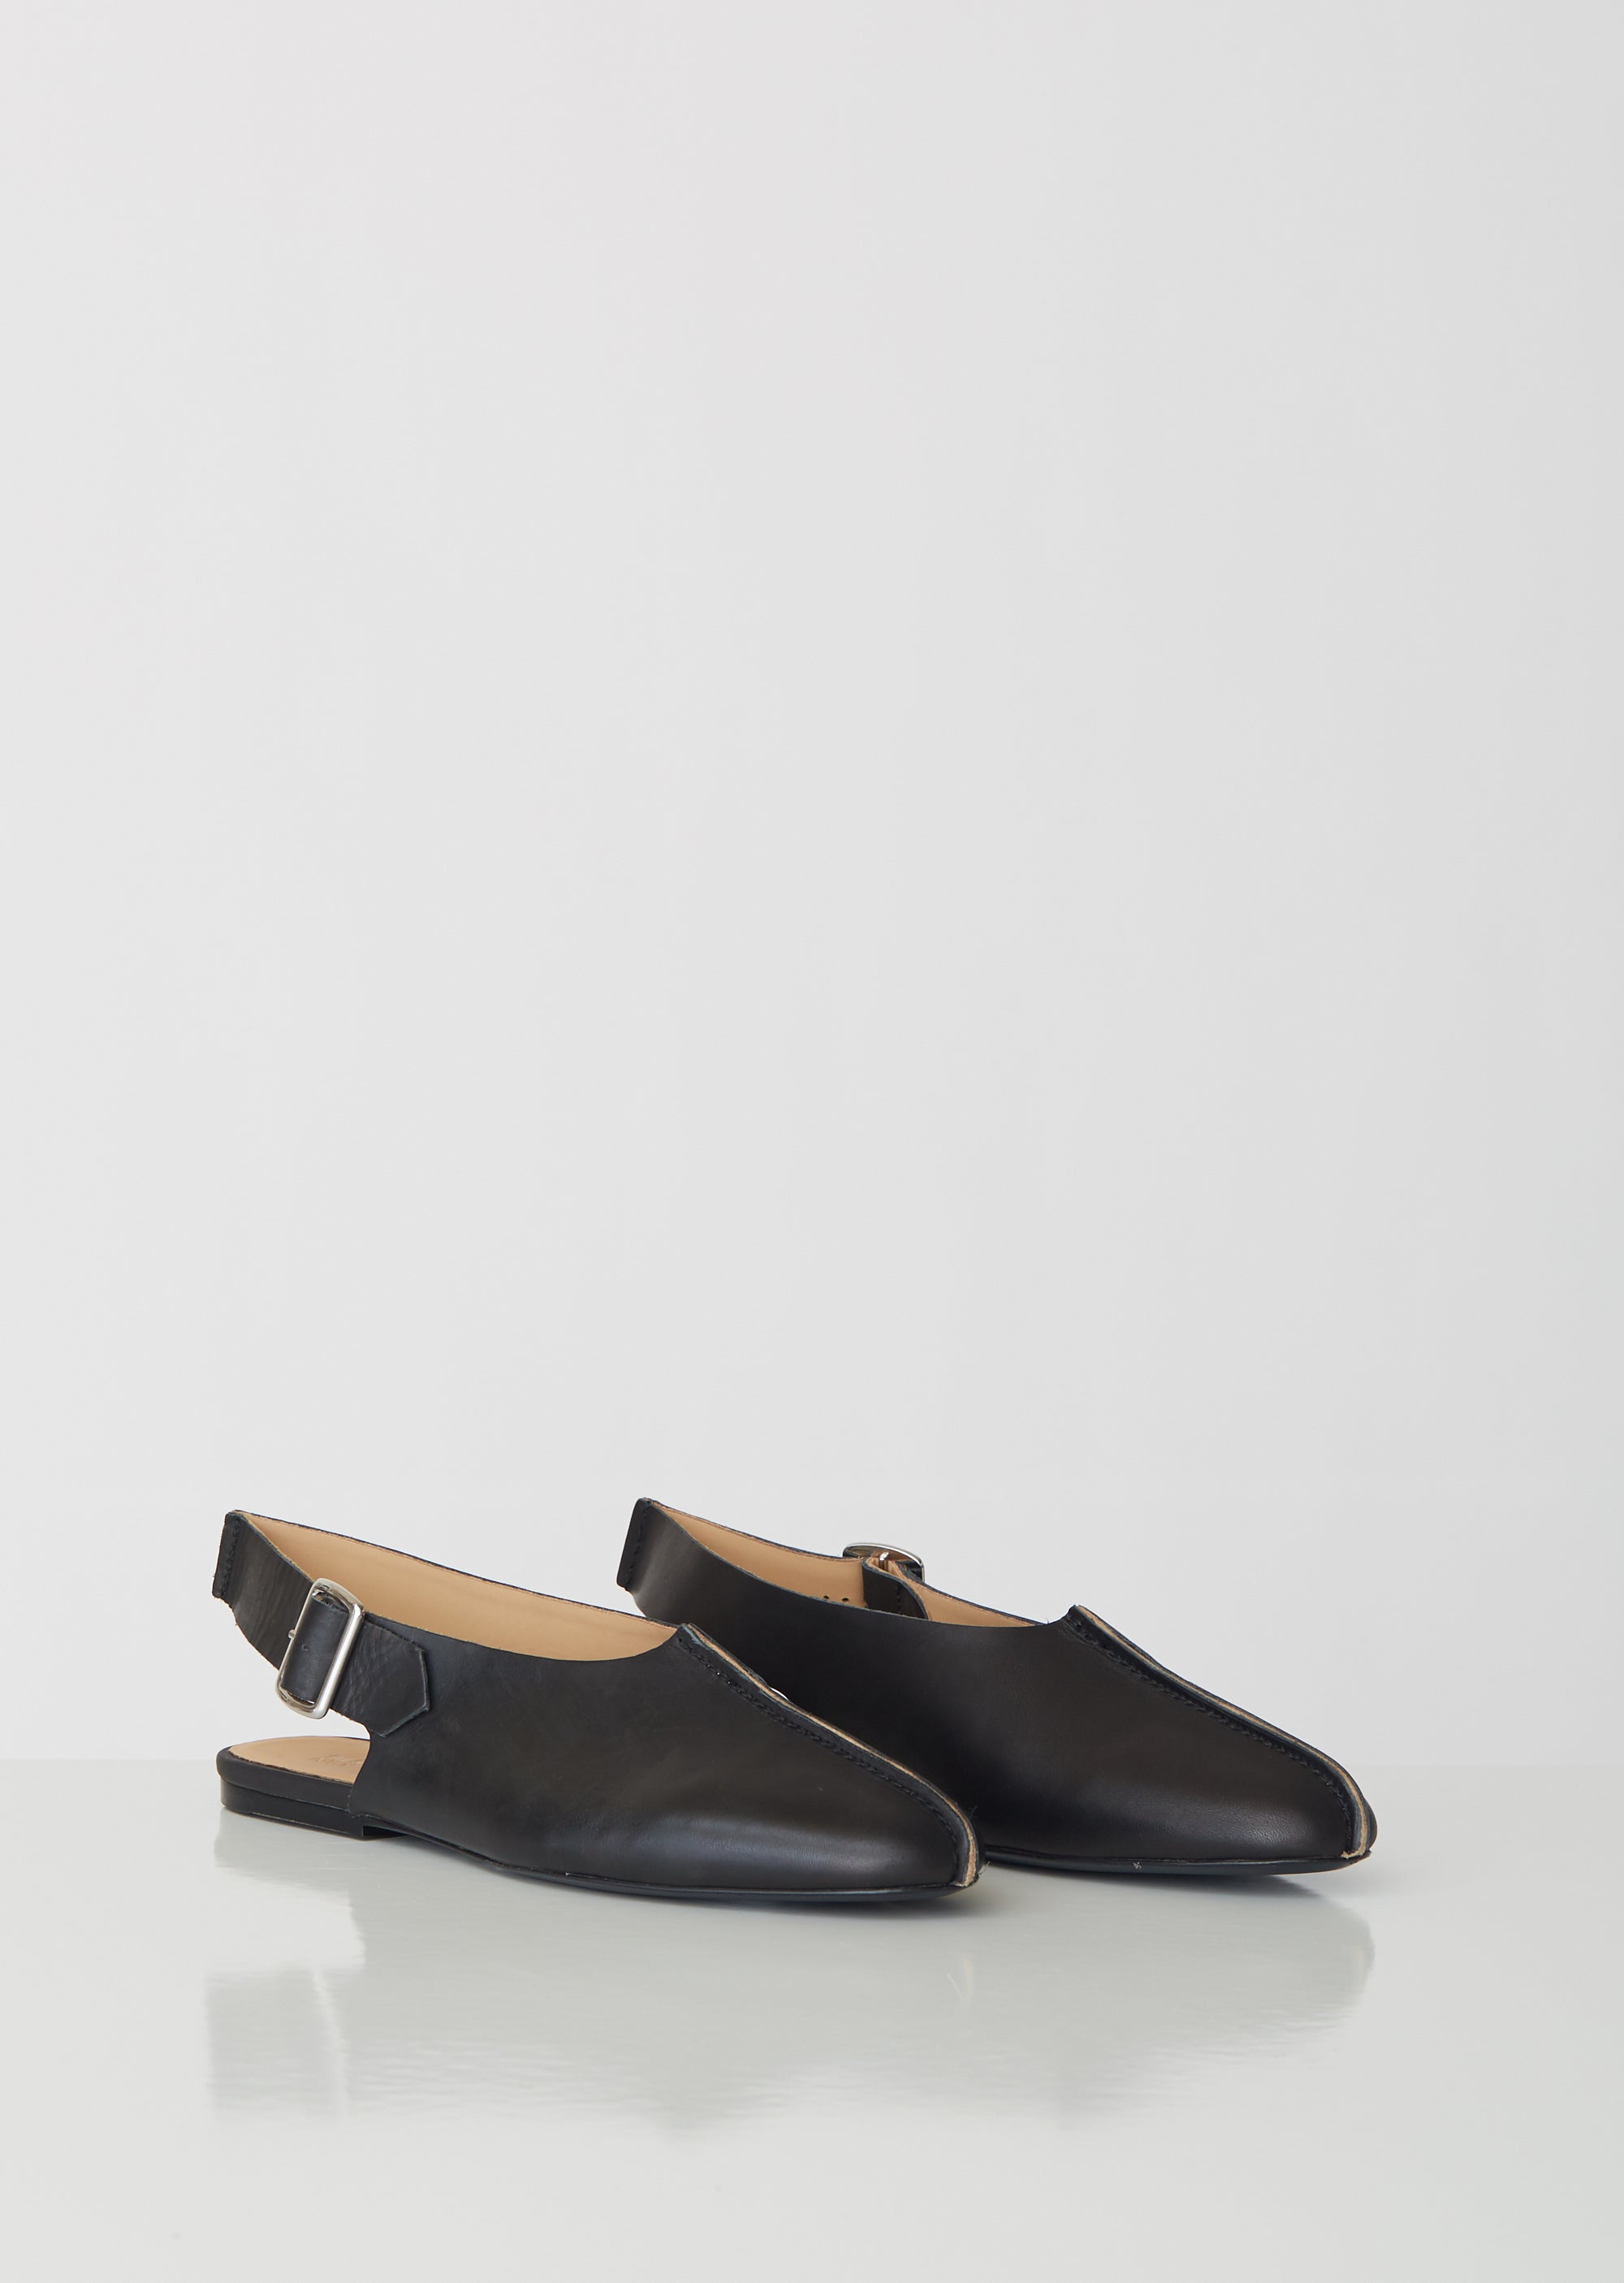 Leather Sling Back Sandals – La Garçonne